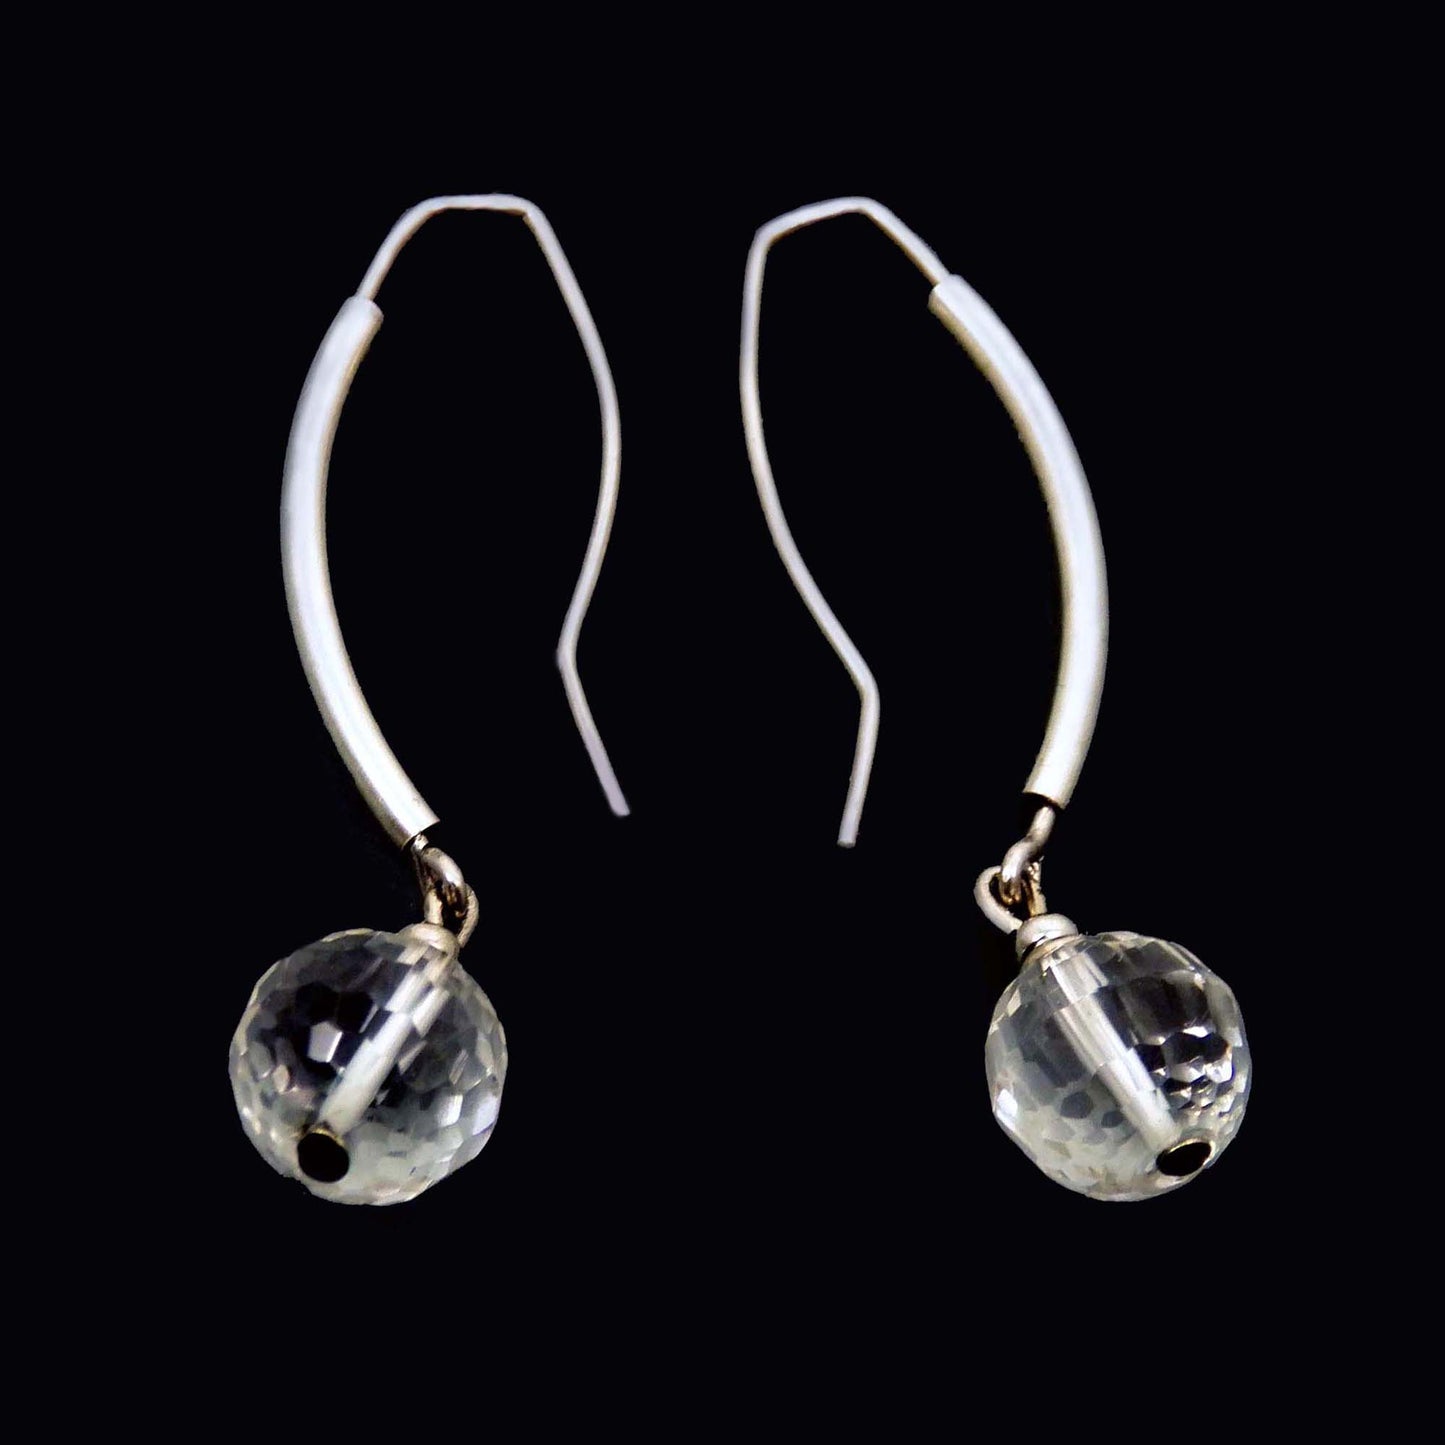 Faceted Quartz Ball Earrings, Sterling Silver Long Ear Hook, Rock Crystal Geometric Jewelry